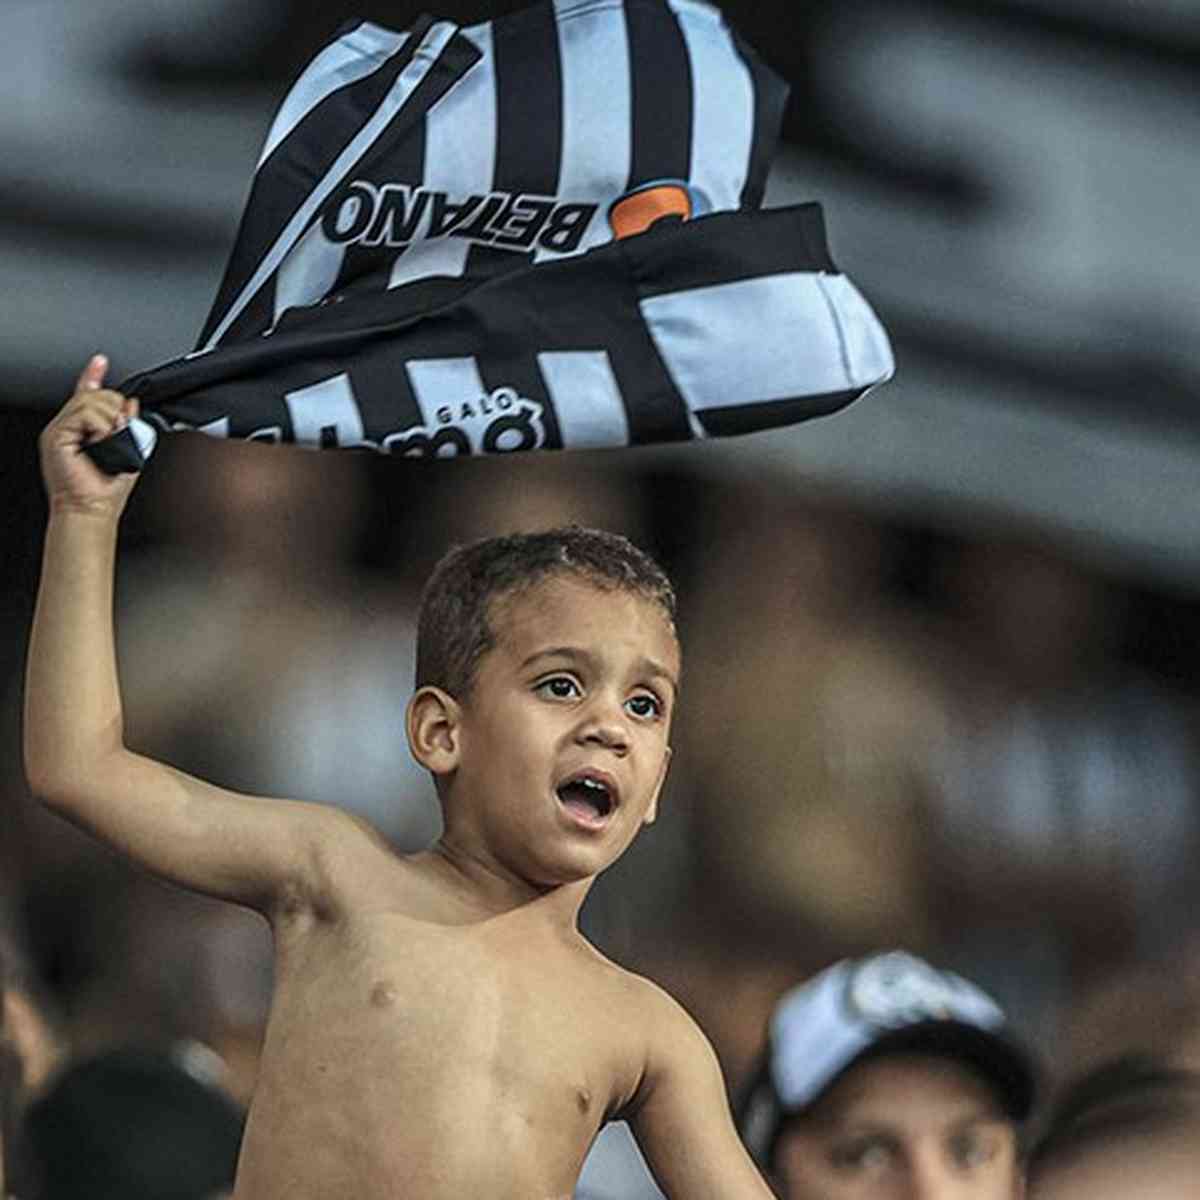 Decisão do Corinthians na Copa Paulista terá troca de ingressos por  brinquedos para crianças carentes